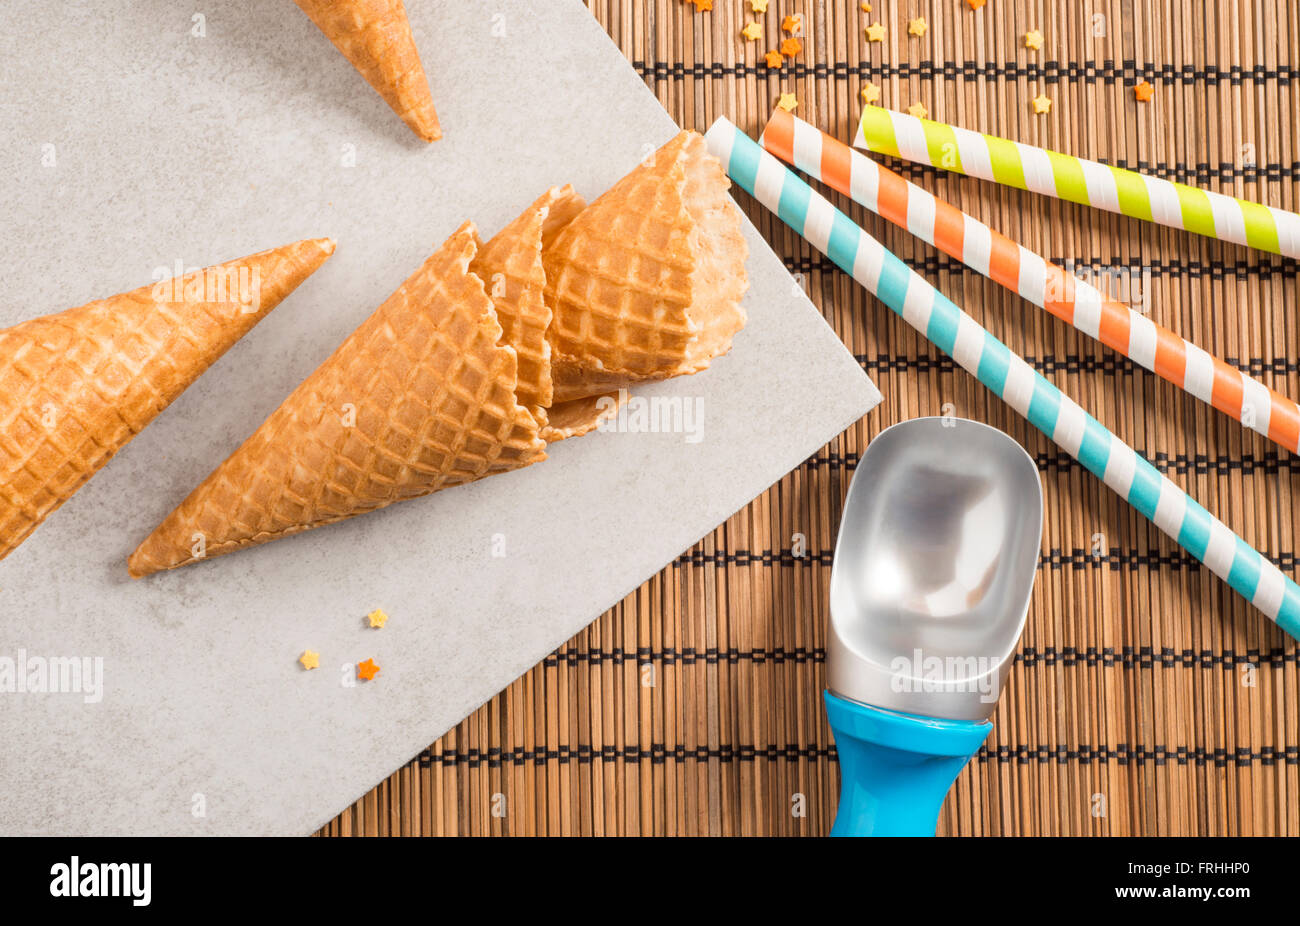 Bunte Zucker Streusel, Strohhalme und Eistüten. Vorbereitung für Party oder Feier. Konzept der Food-Styling. Stockfoto